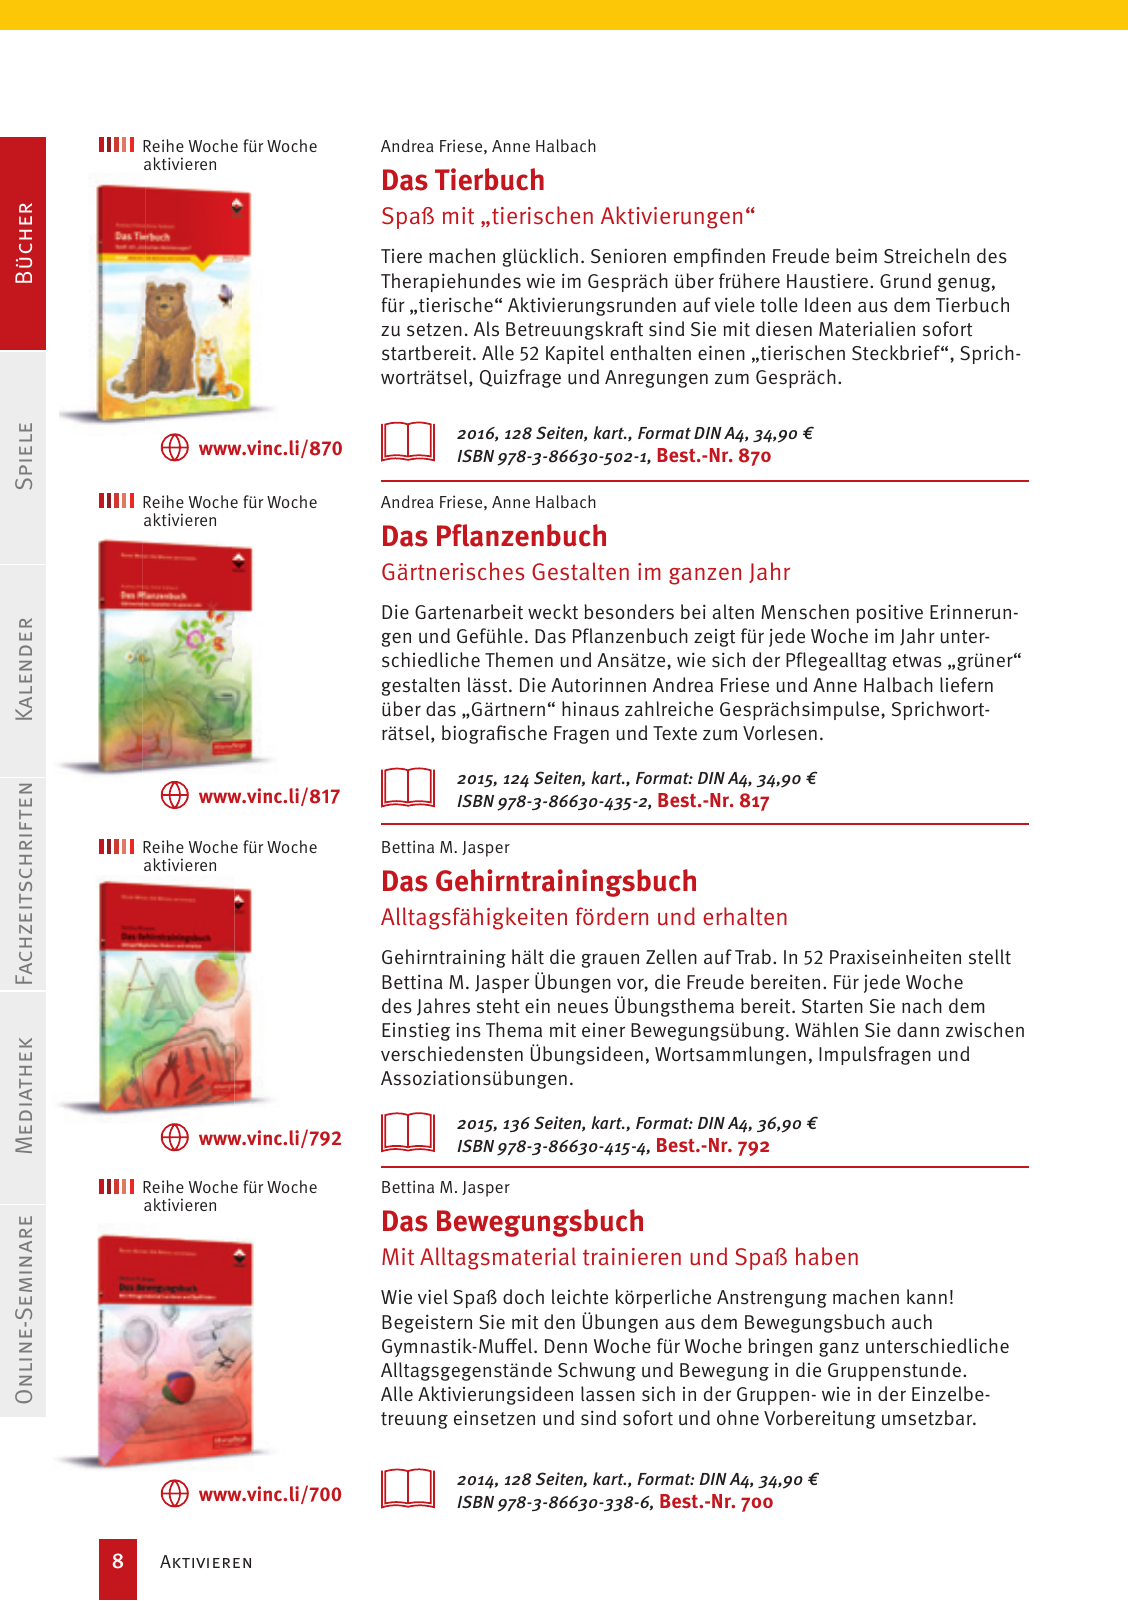 Vorschau Vincentz Verlagsprogramm 2020 Seite 8